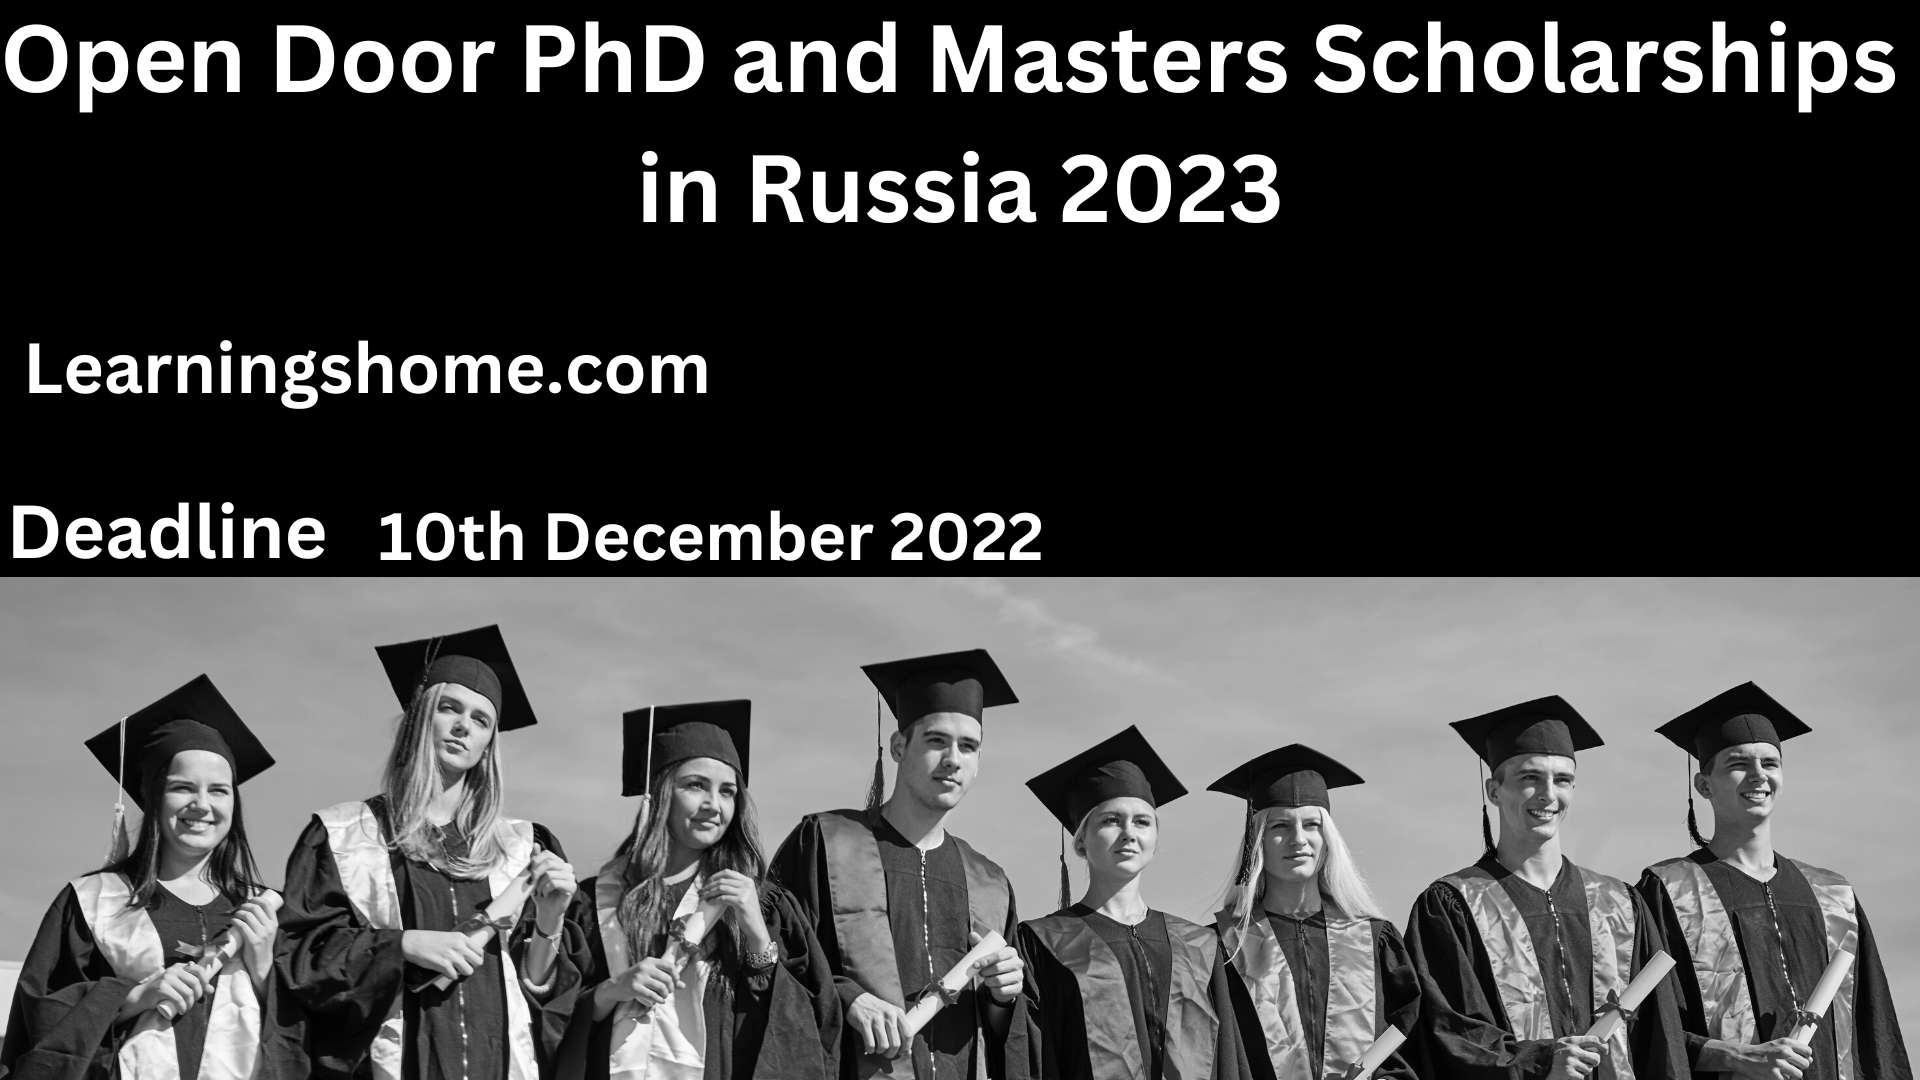 Open Door PhD and Masters Scholarships in Russia 2023